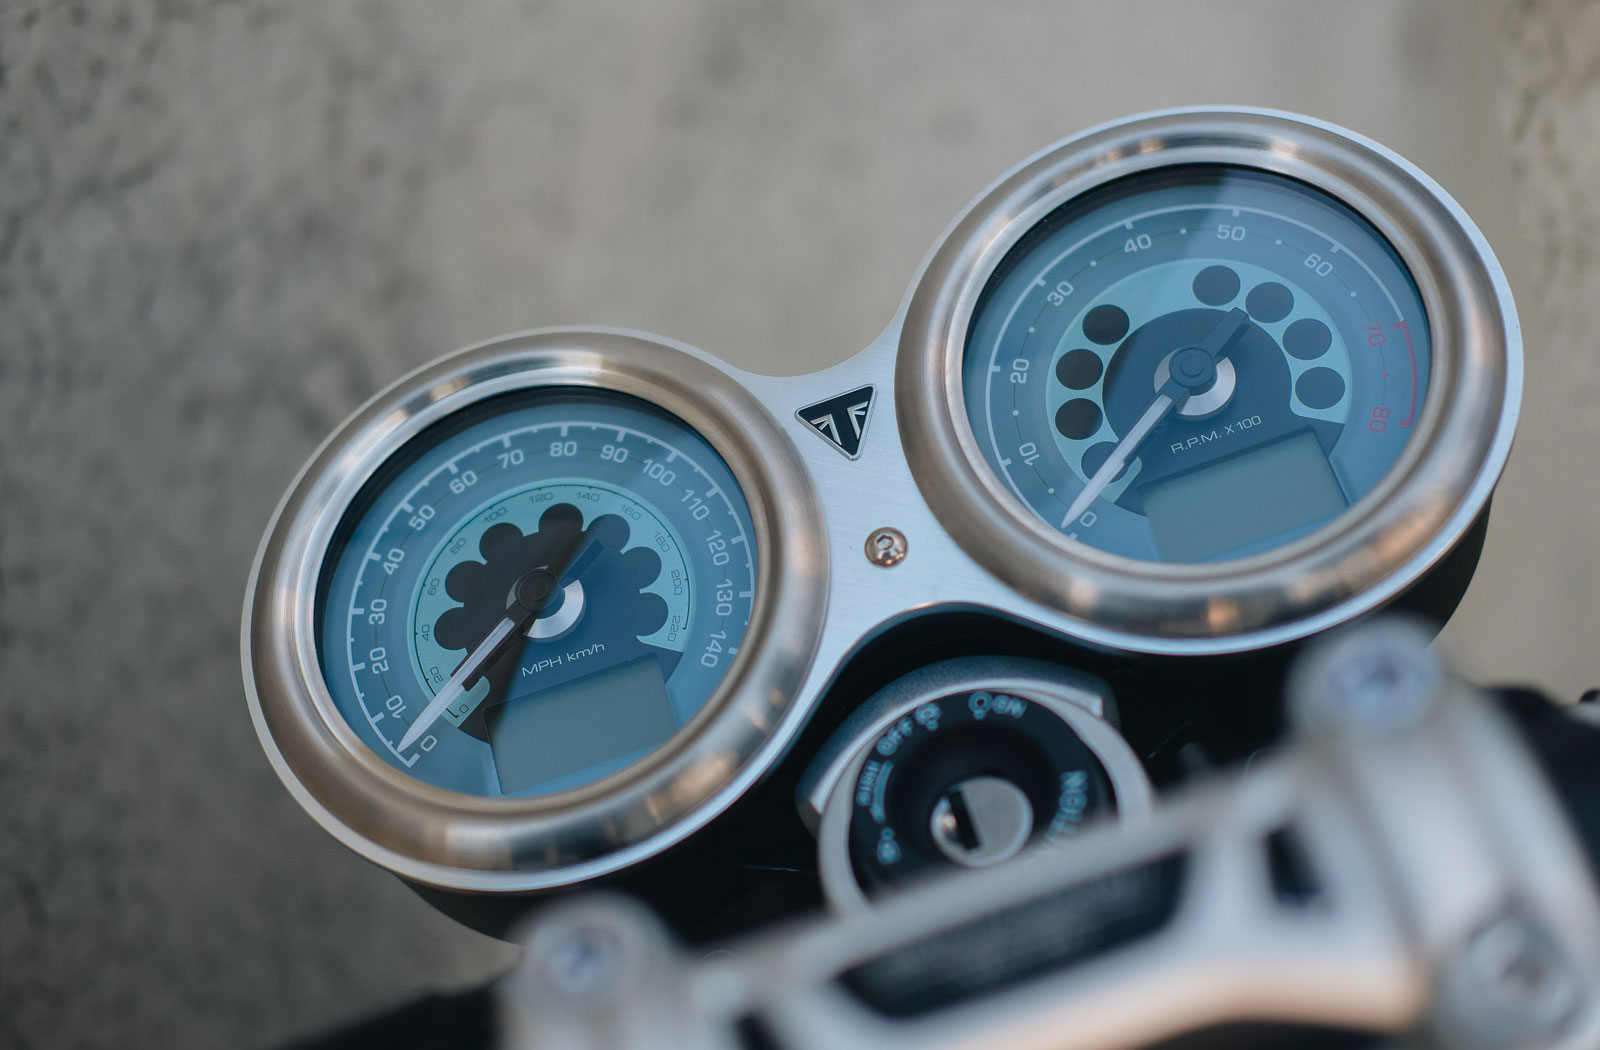 Triumph Breitling Speed Twin gauge design